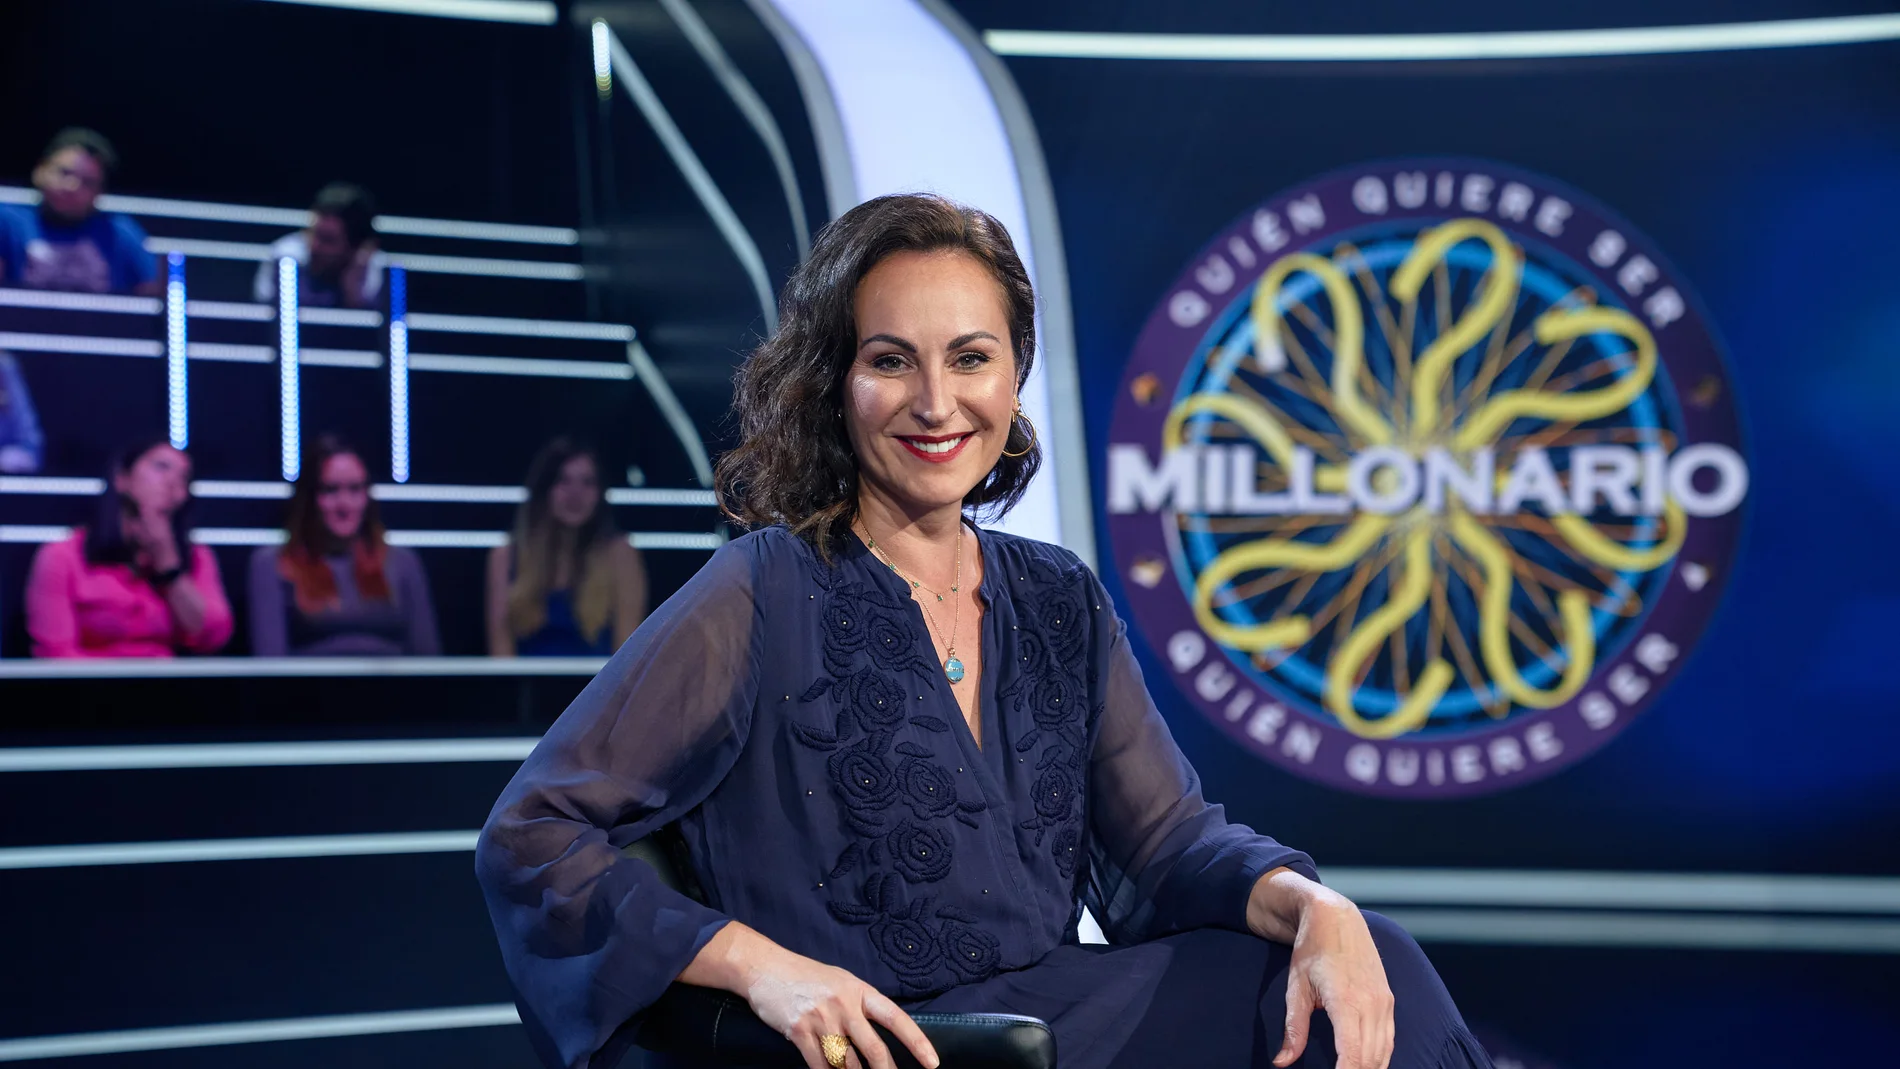 Ana Milán, ante el reto de ‘¿Quién quiere ser millonario?’: “Sería una millonaria fácil de consumir” 